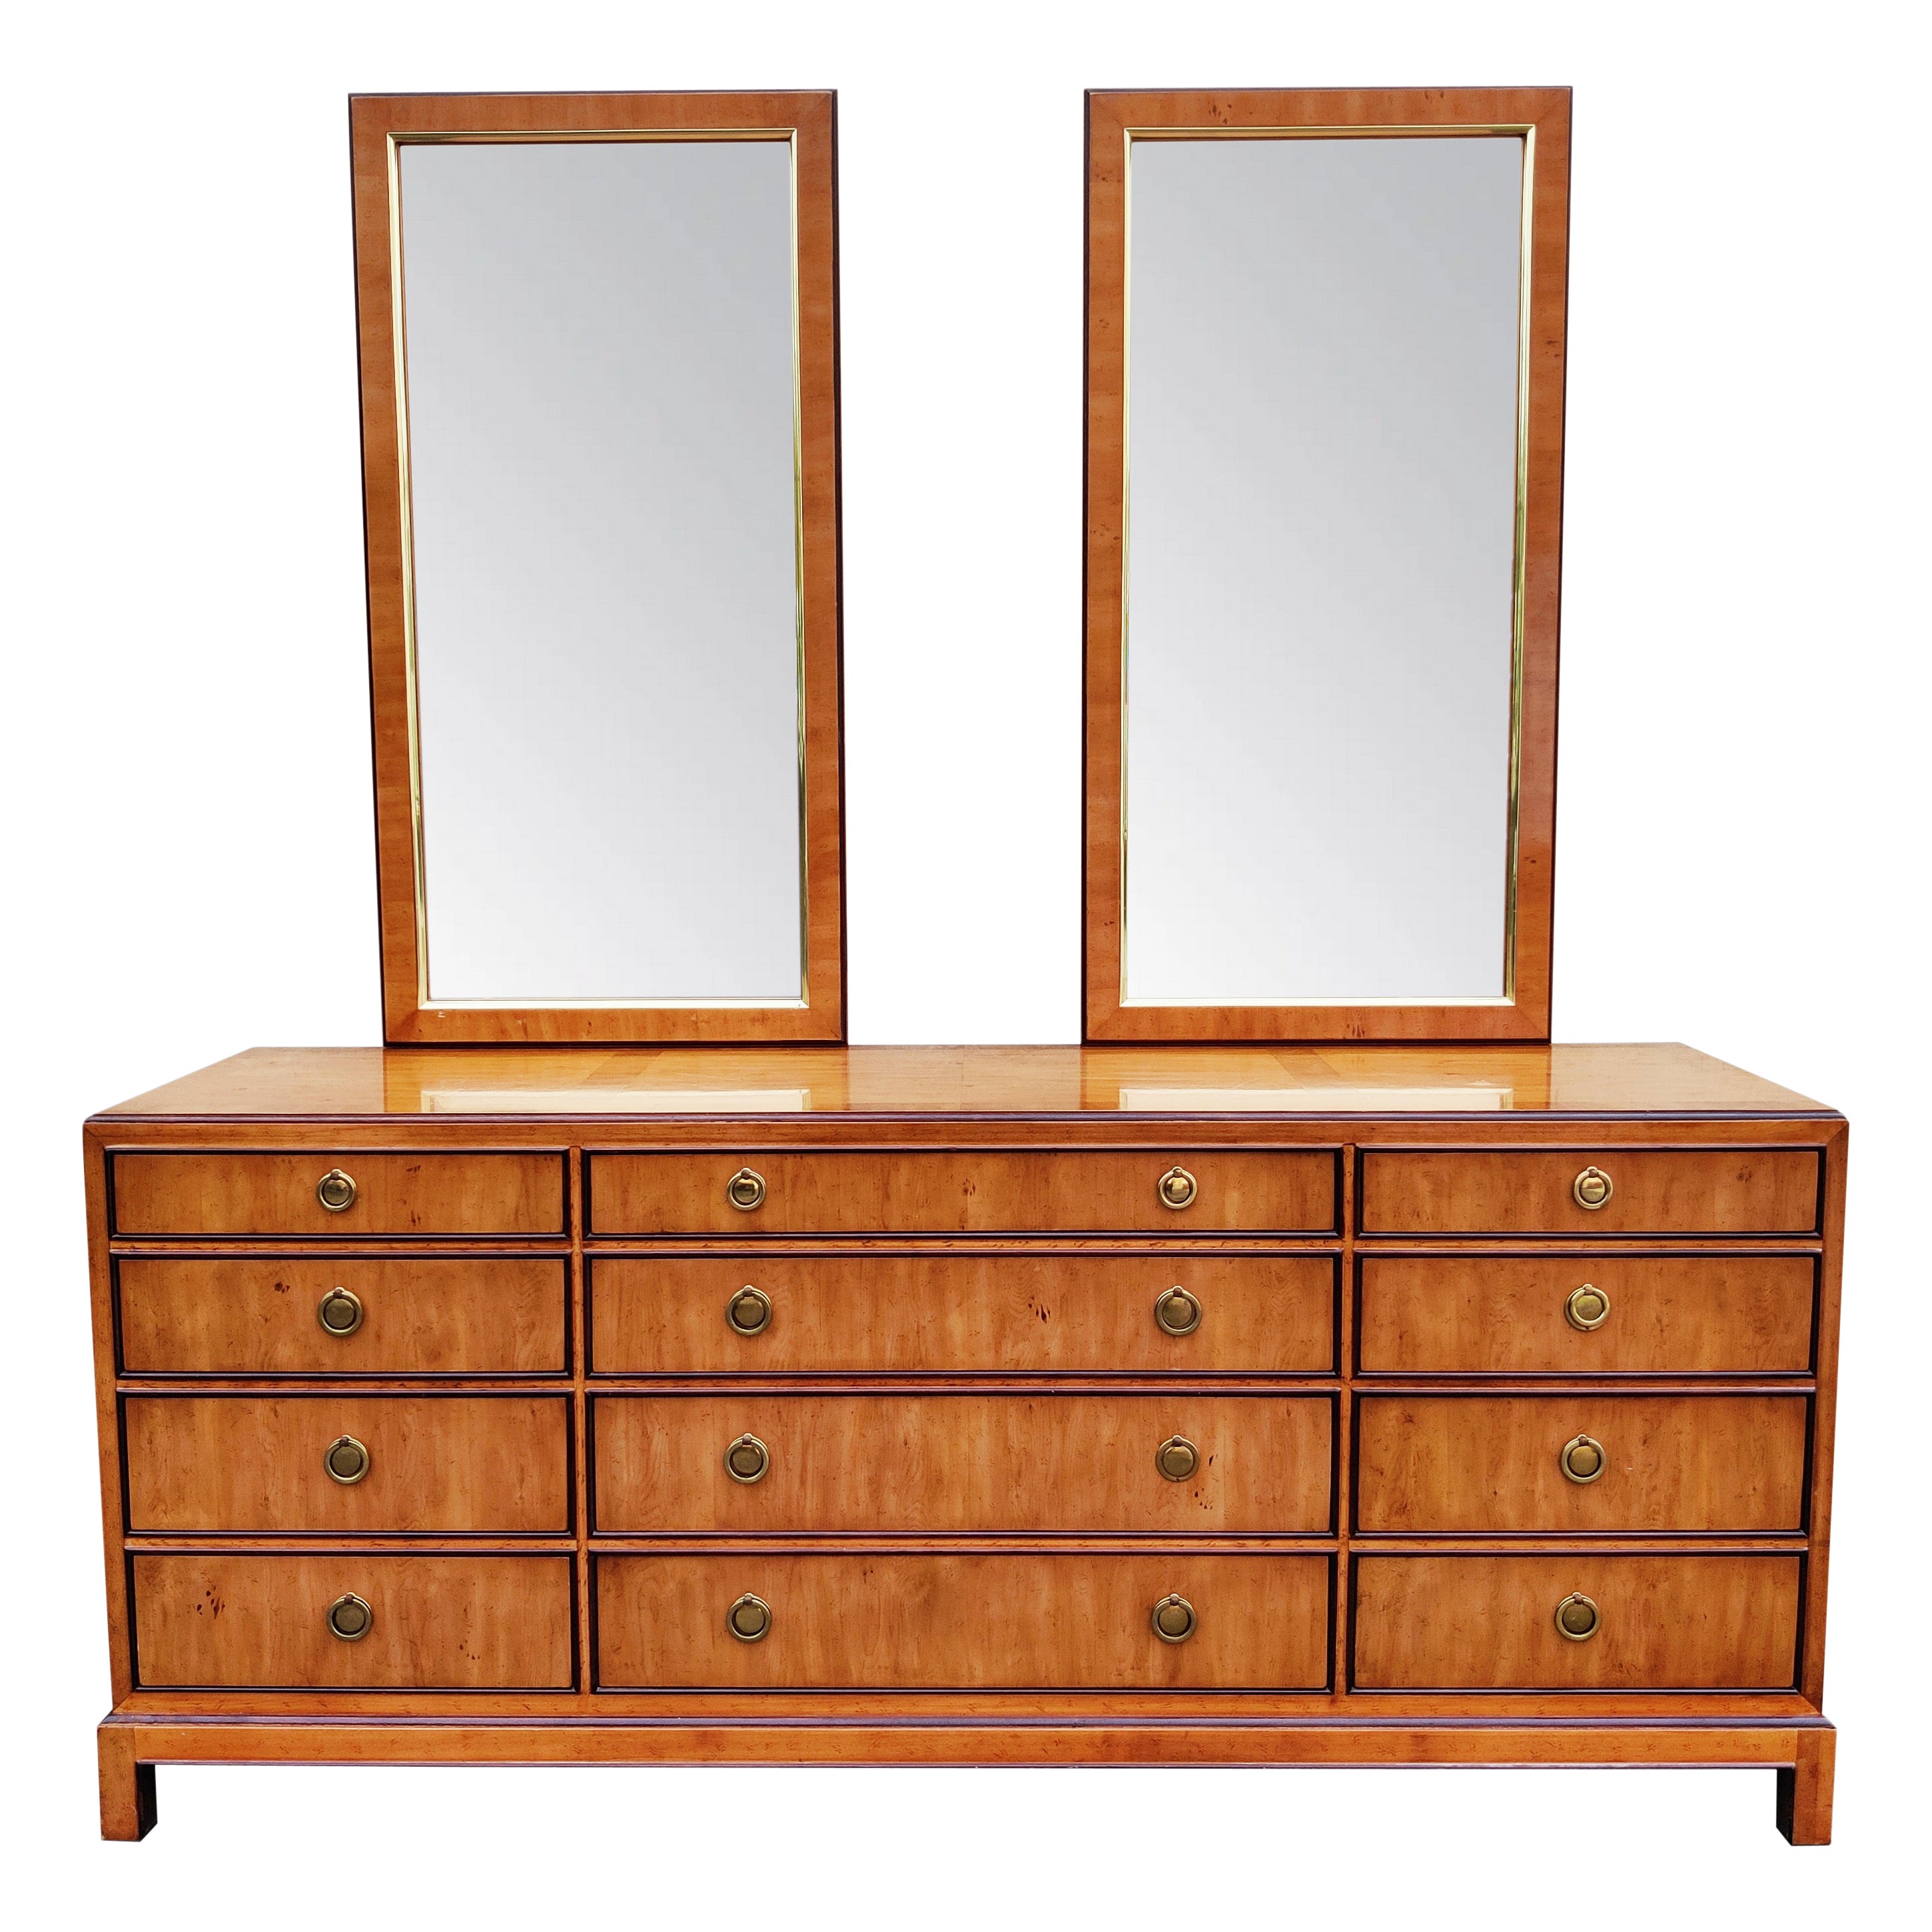 1970s Drexel Heritage Hollywood Regency Burlwood & Brass 9 Drawer Dresser Mirror For Sale